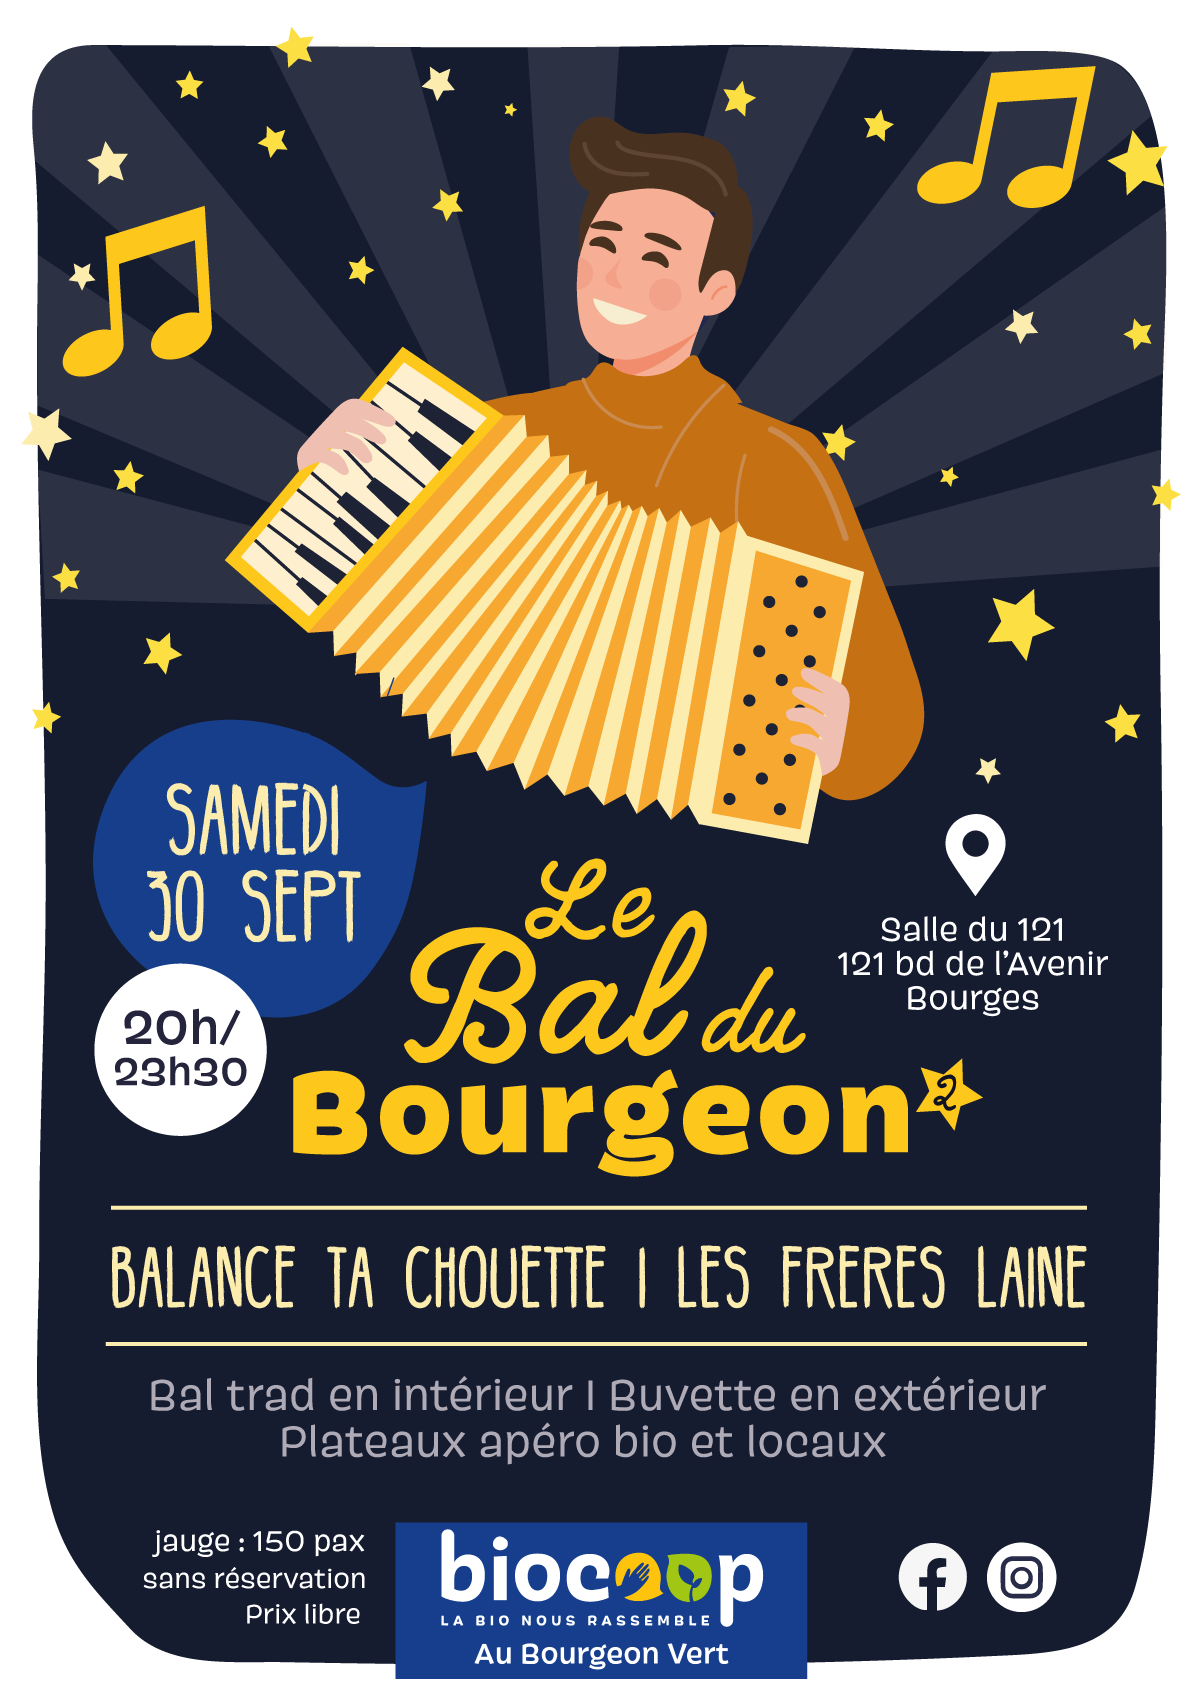 Venez danser et festoyer au 2ème Bal (trad) du Bourgeon !